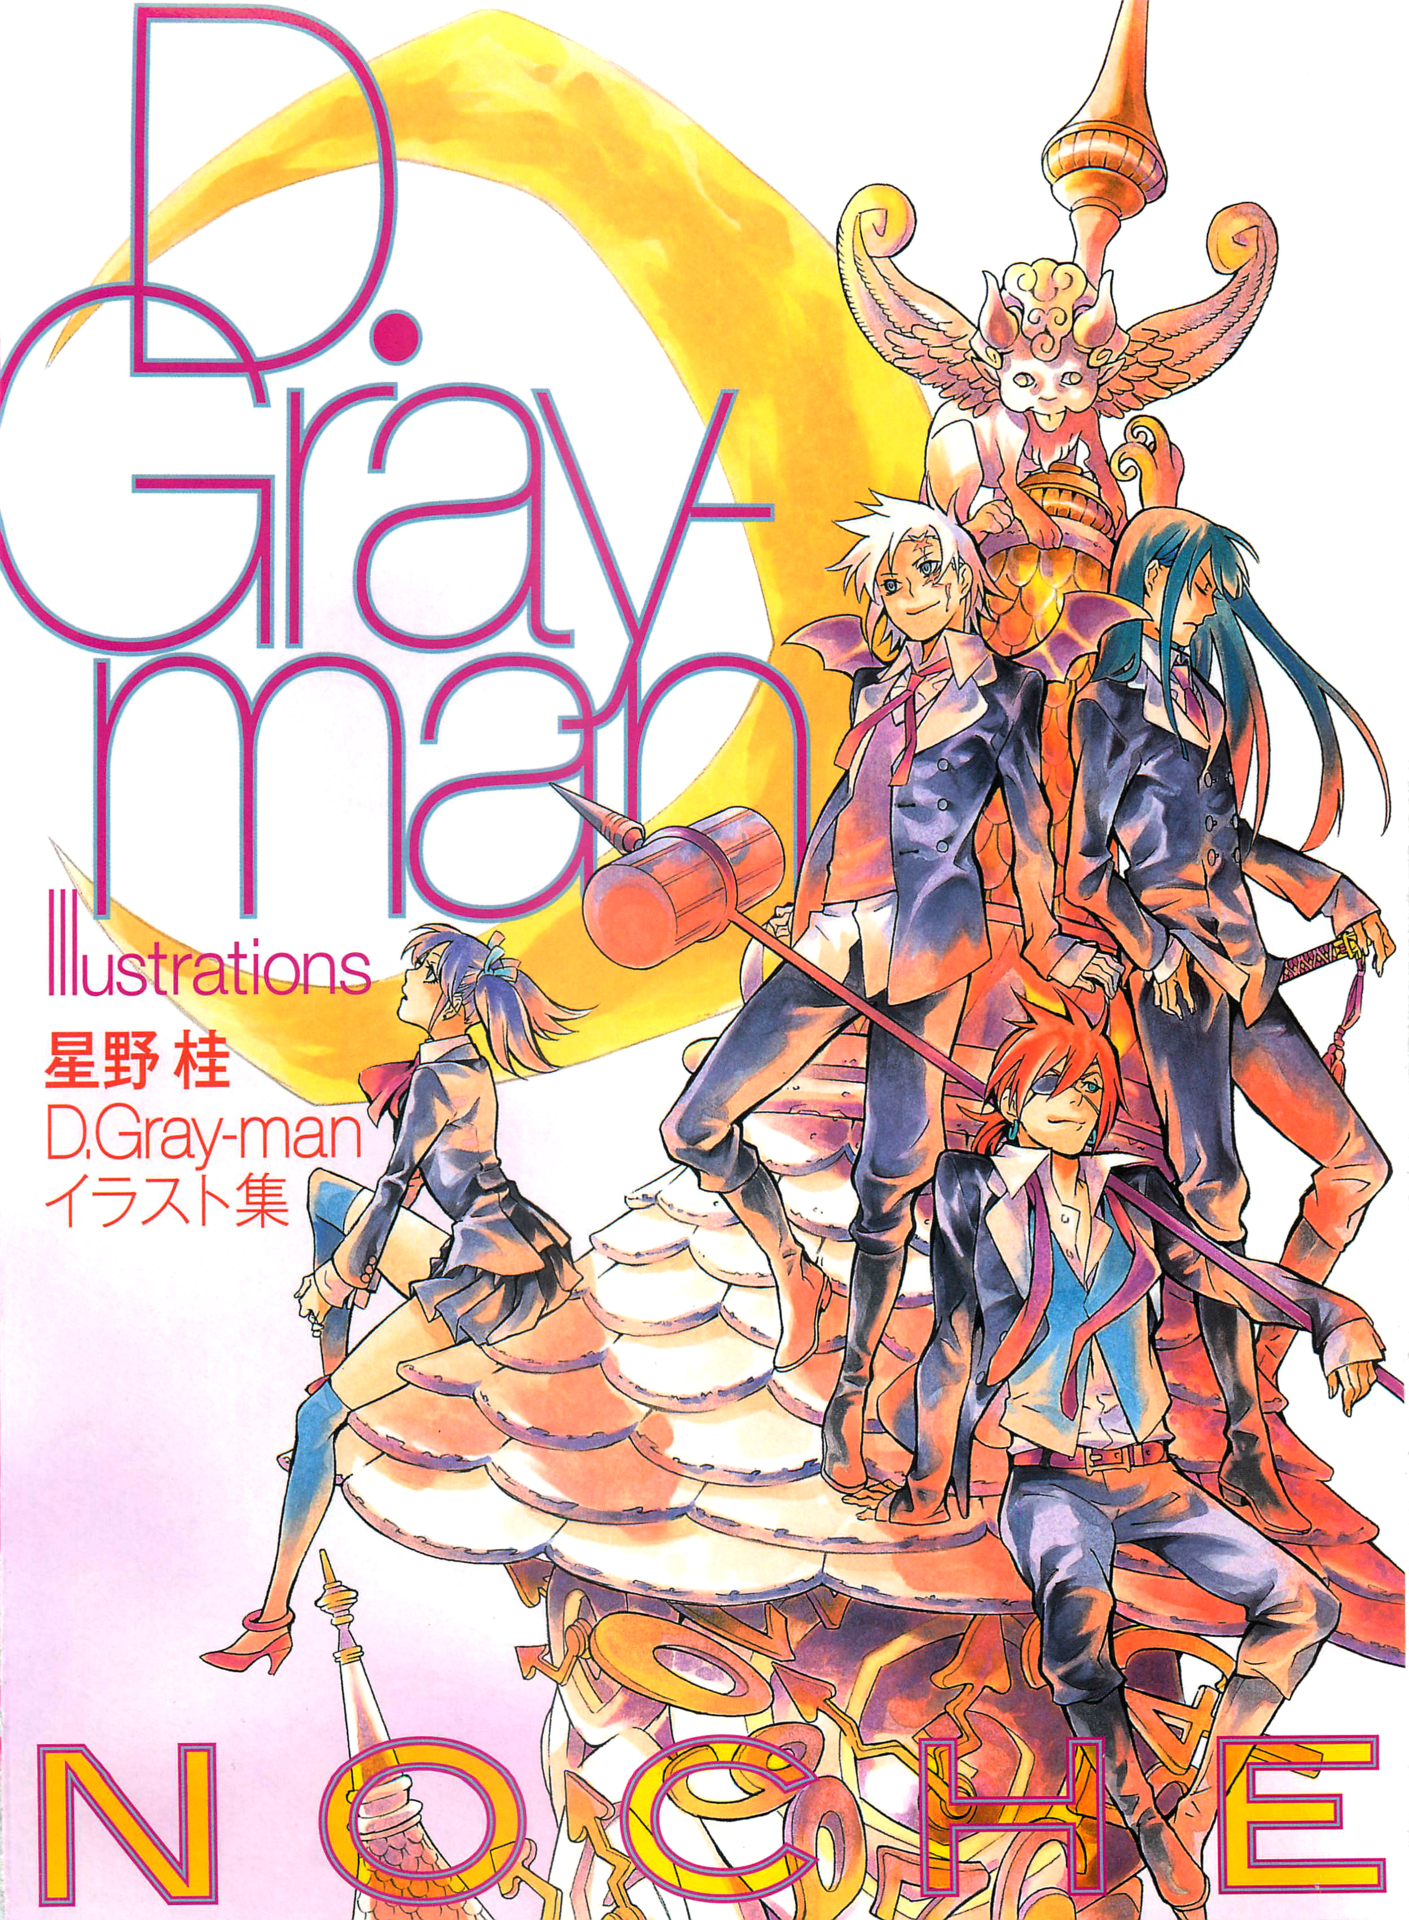 驅魔少年(D·Gray-Man)